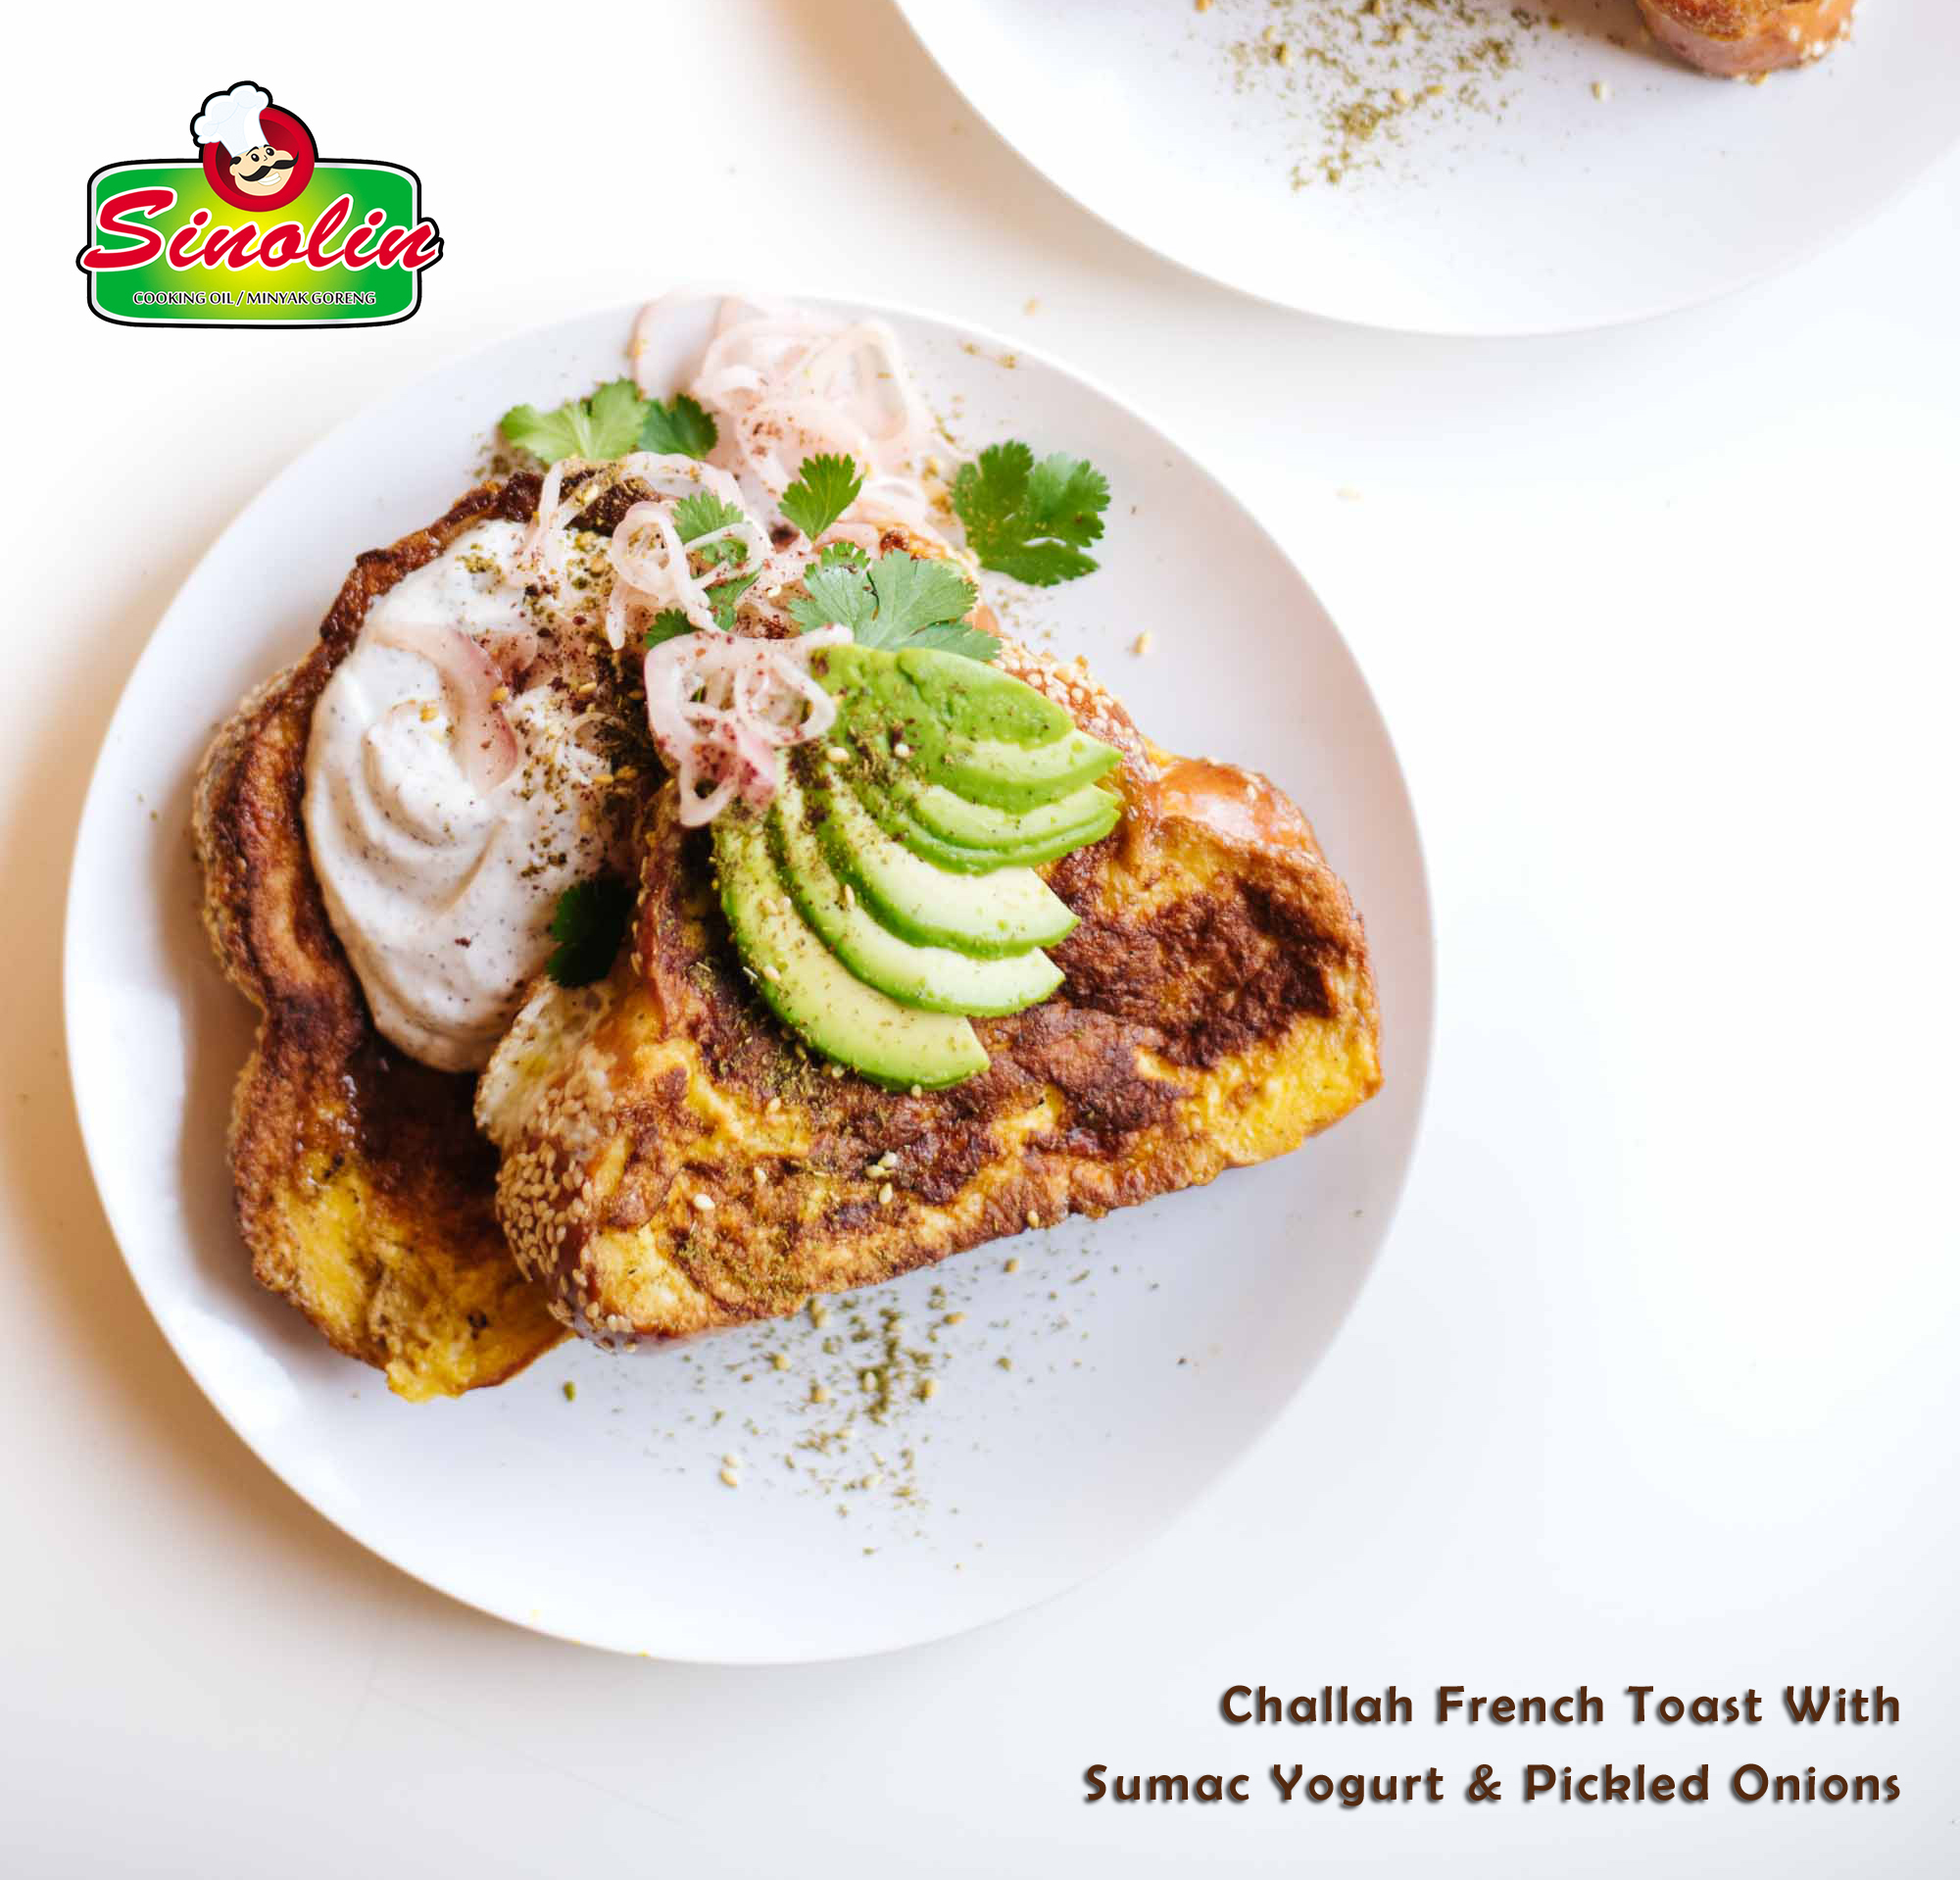 Challah French Toast Dengan Sumac Yogurt & Acar Bawang Oleh Dapur Sinolin